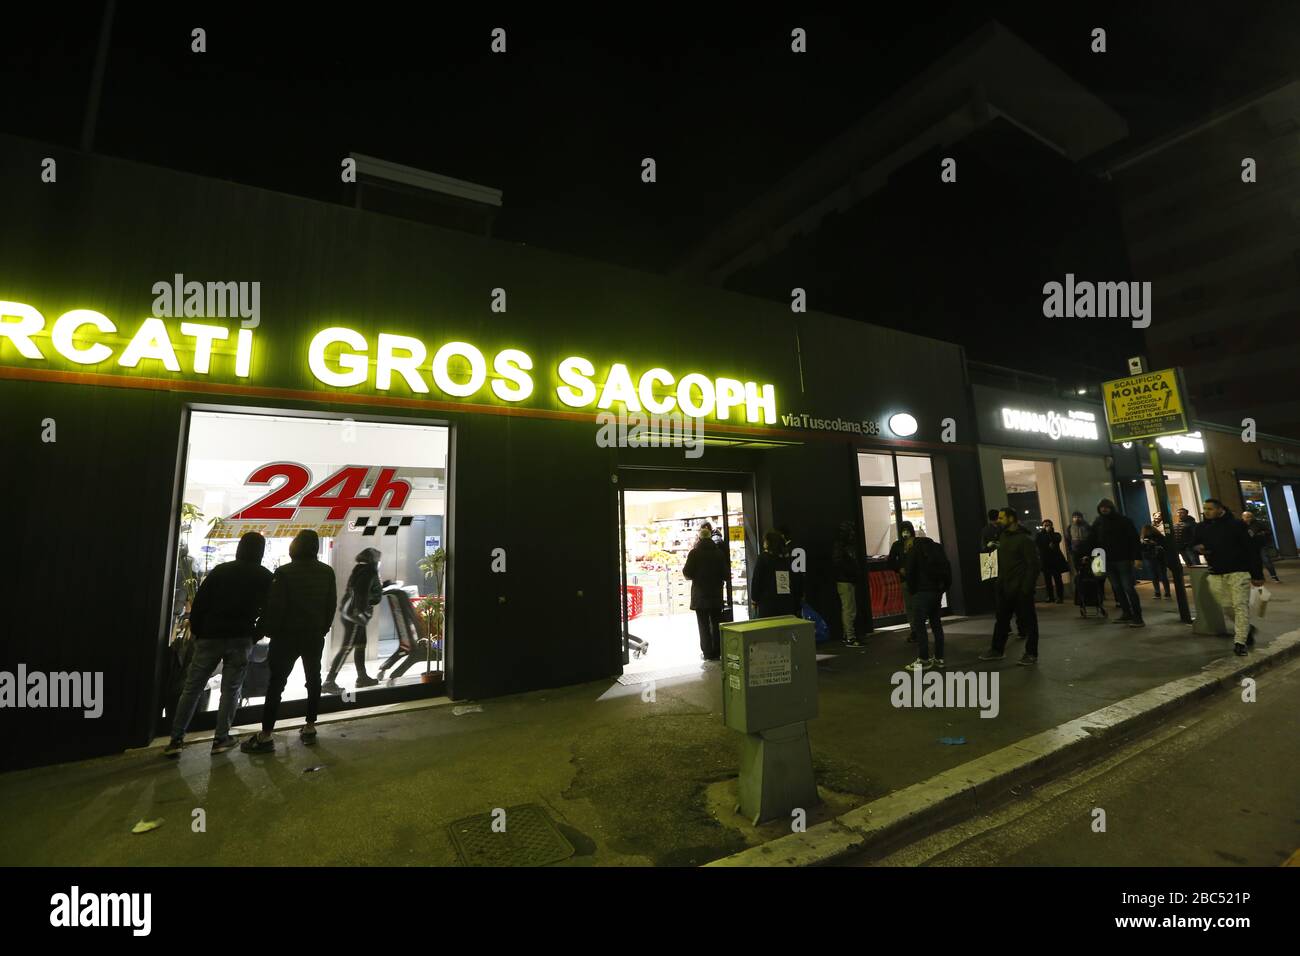 Roma, Italia, 10th 10 marzo 2020. I clienti in coda di notte fuori da un supermercato h24 dopo che il governo ha annunciato le restrizioni di Covid-19. Foto Stock